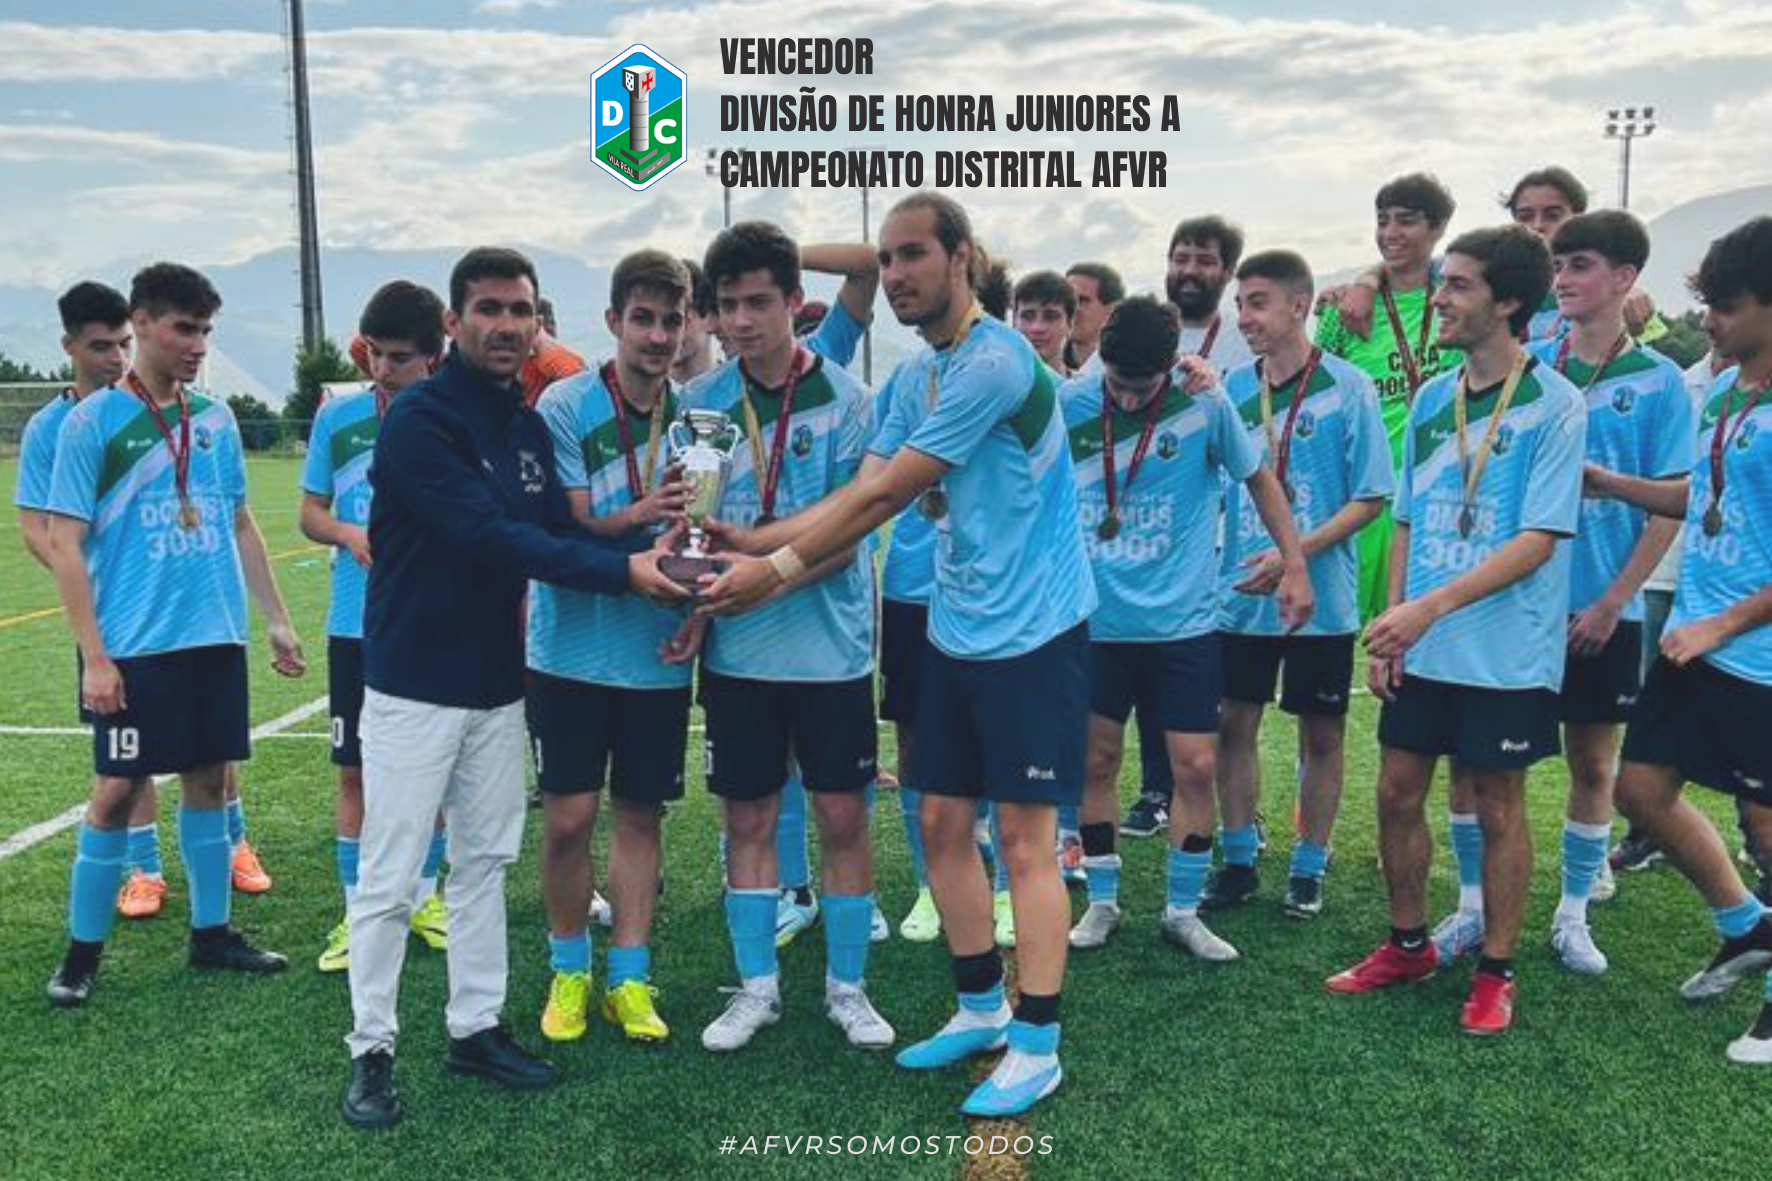 ADCE Diogo Cão vence Divisão de Honra de Juniores A | Campeonato Distrital AFVR